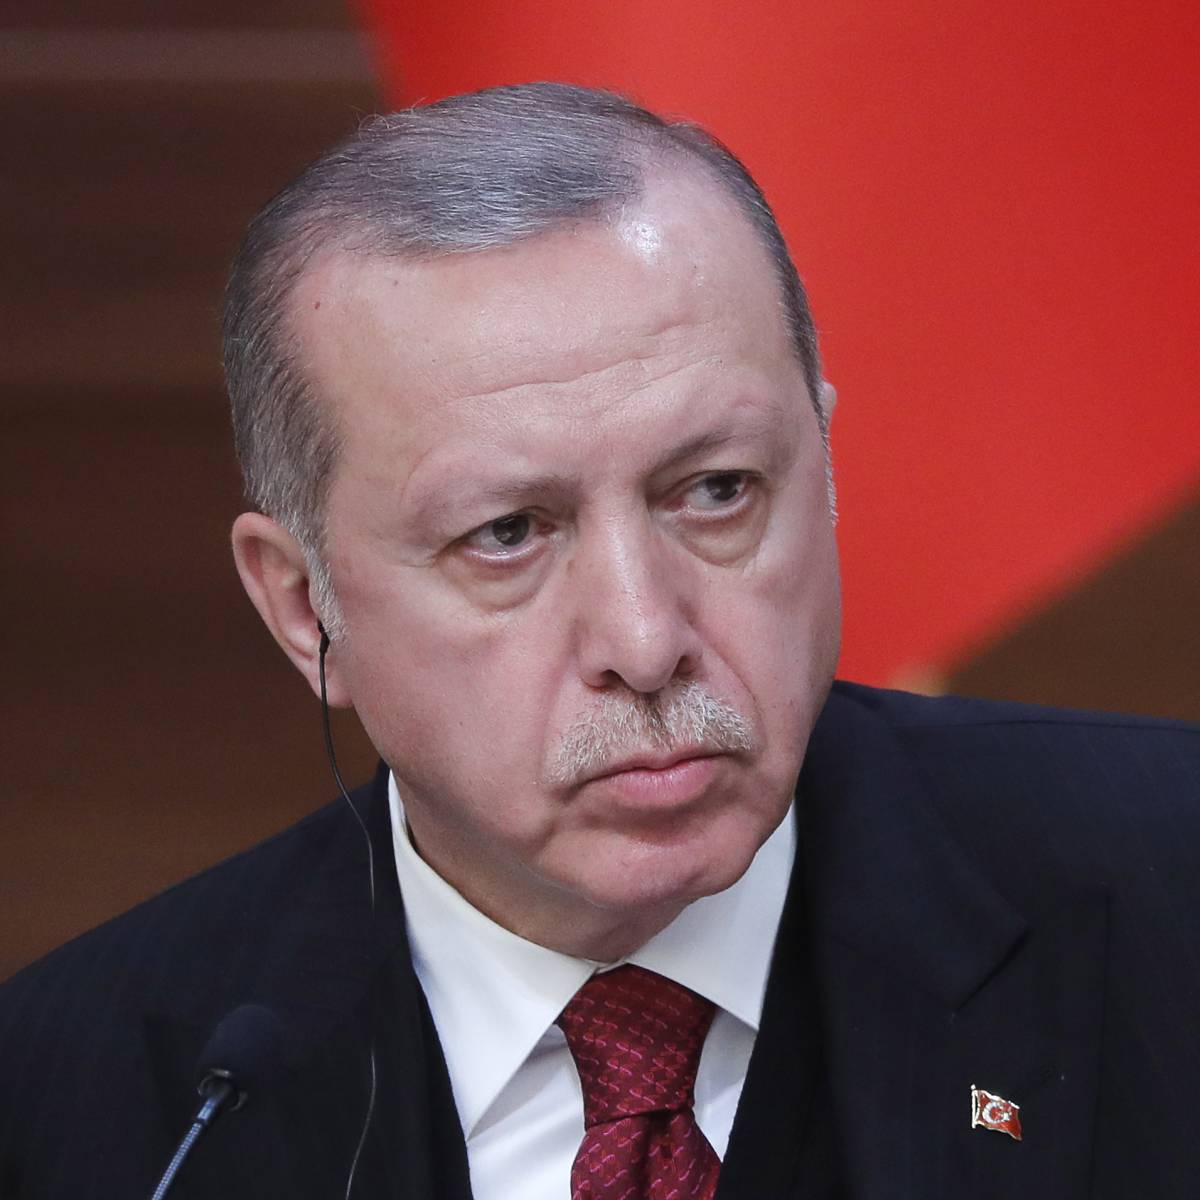 Реформатор или автократ: как Эрдоган изменил Турцию